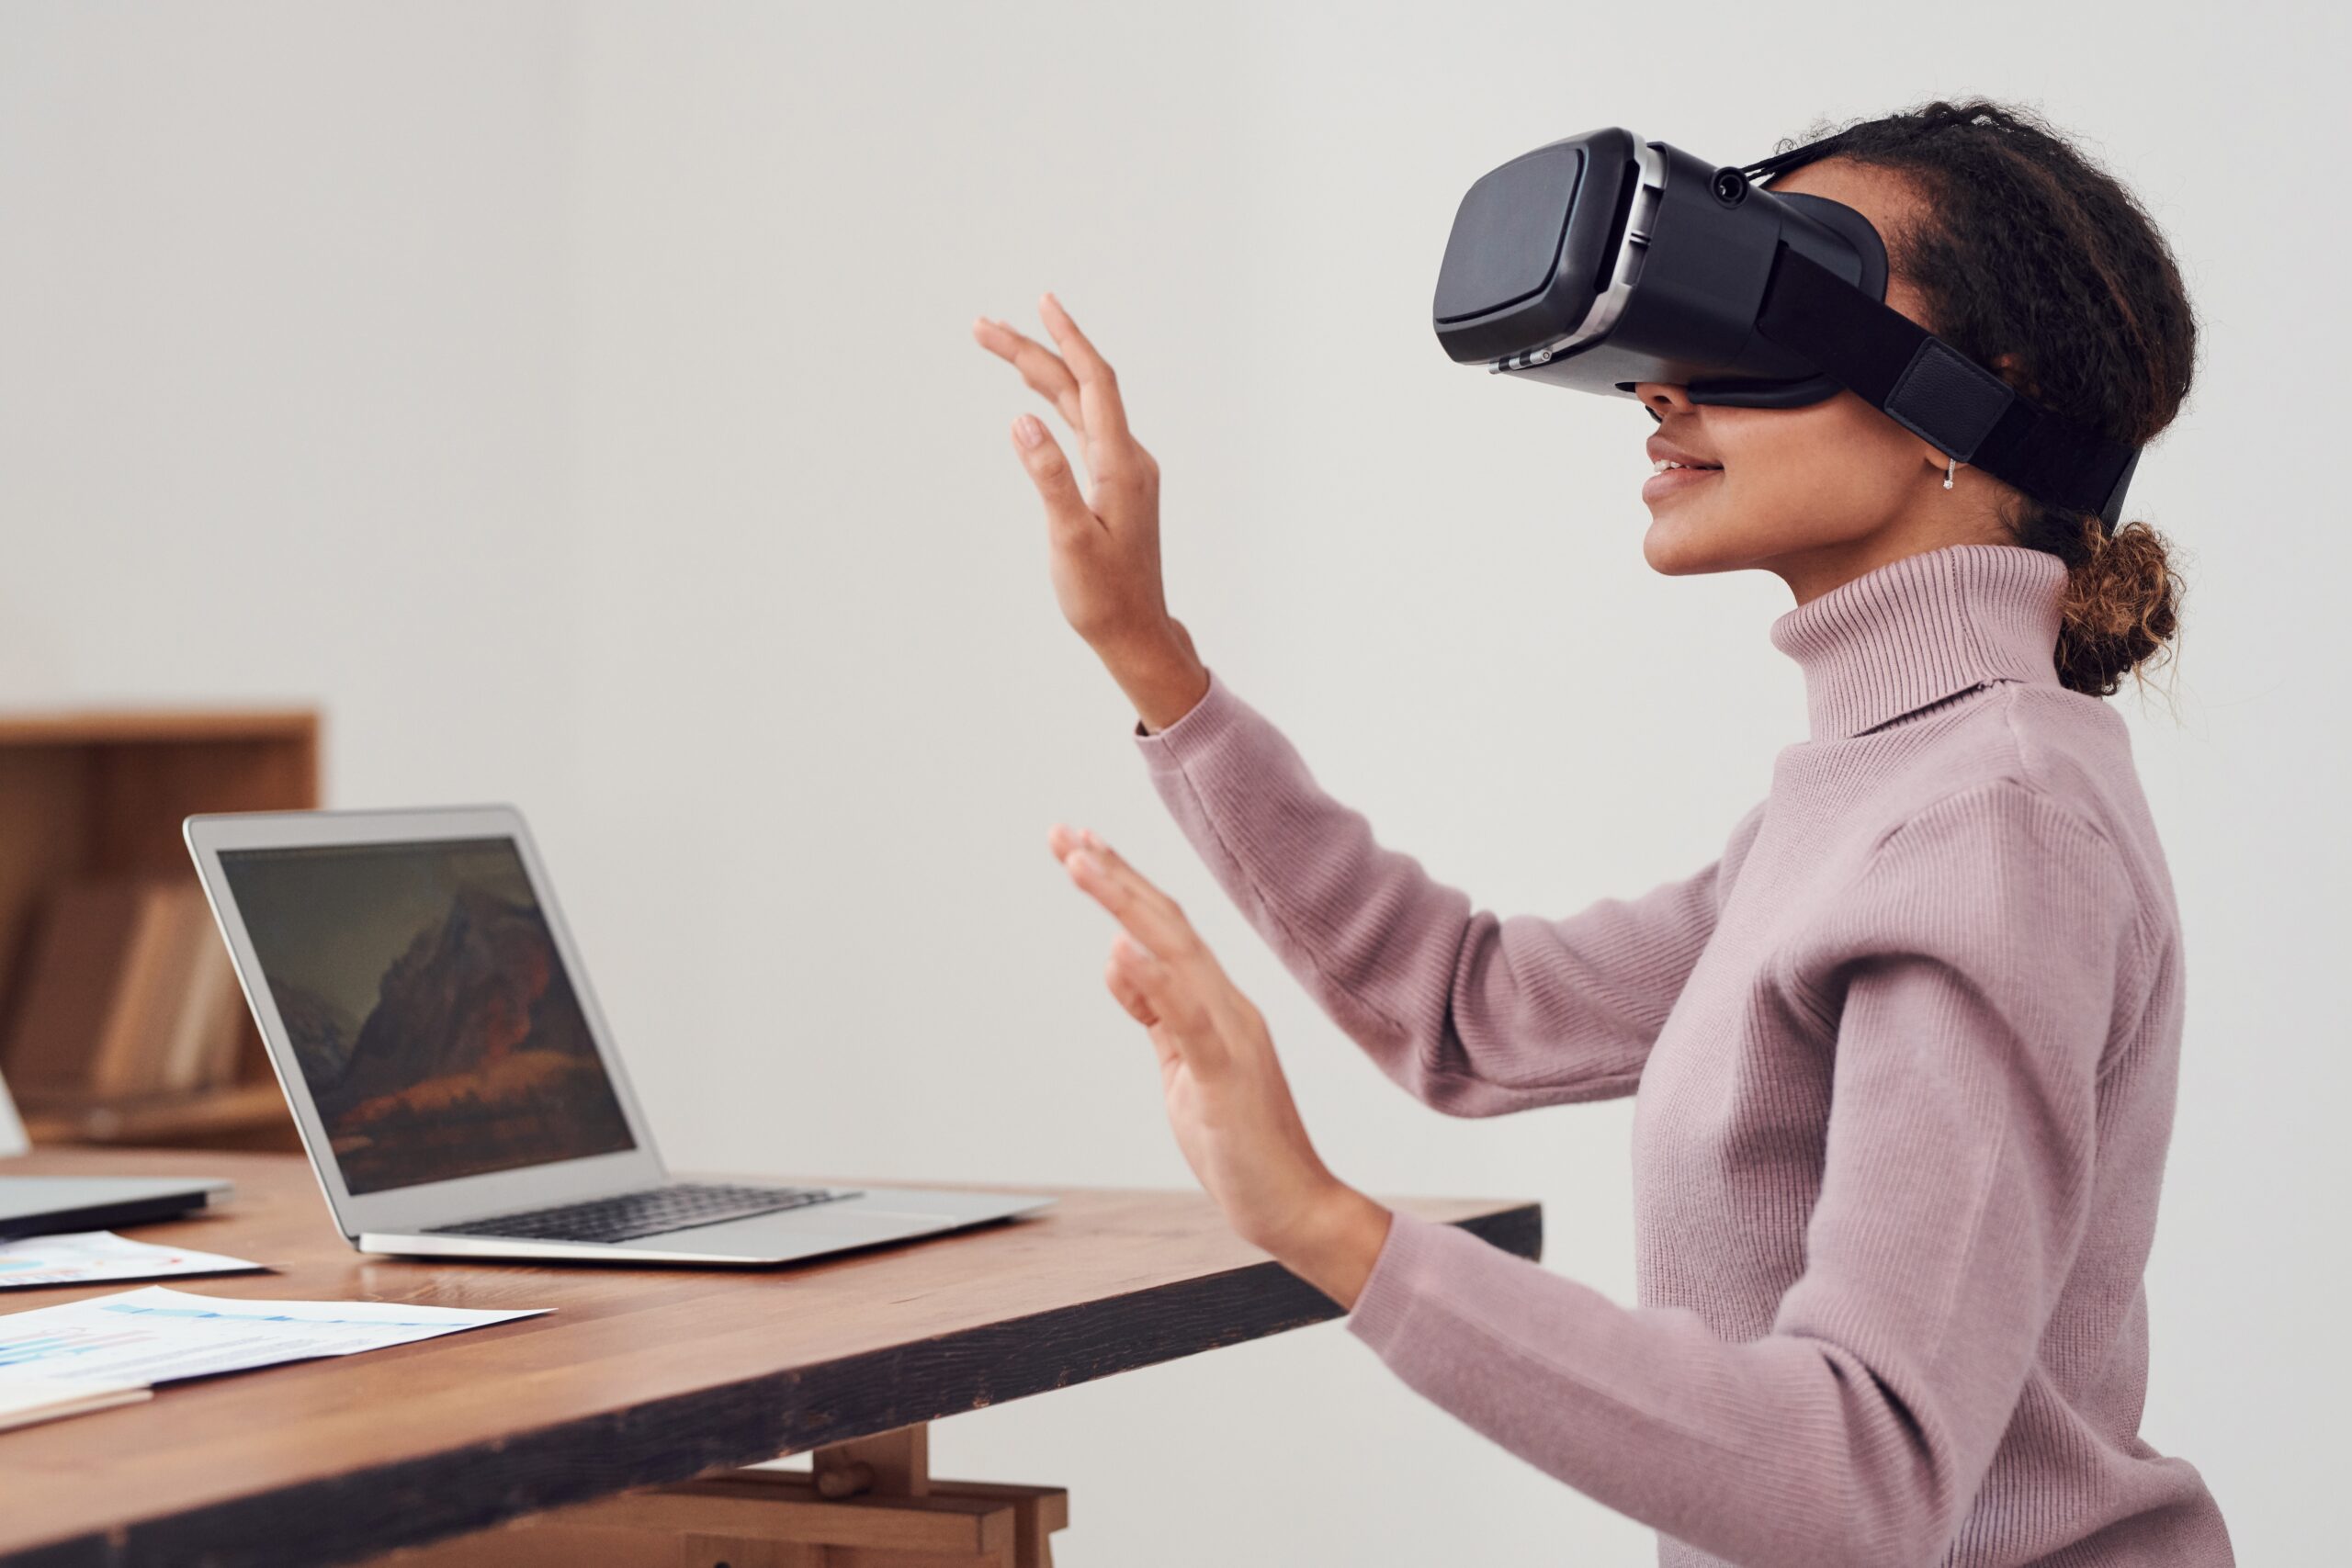 Met een VR bril stapt een vrouw je in een virtuele omgeving. Ze draagt hiervoor een VR-headset. Ze is aan het zitten en voor haar staat een laptop.